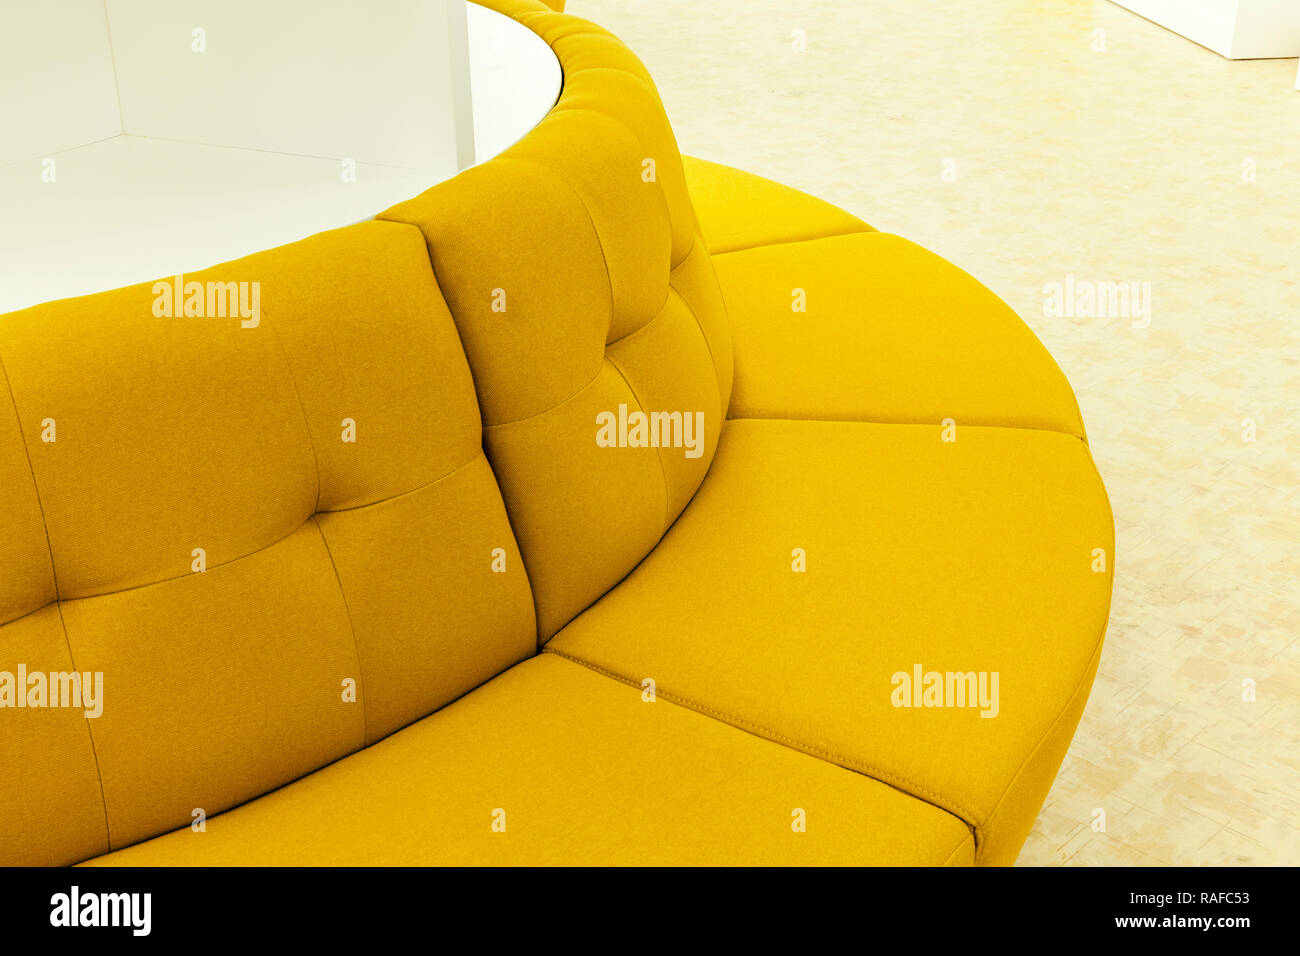 Dettaglio di divani gialli, close up Foto Stock